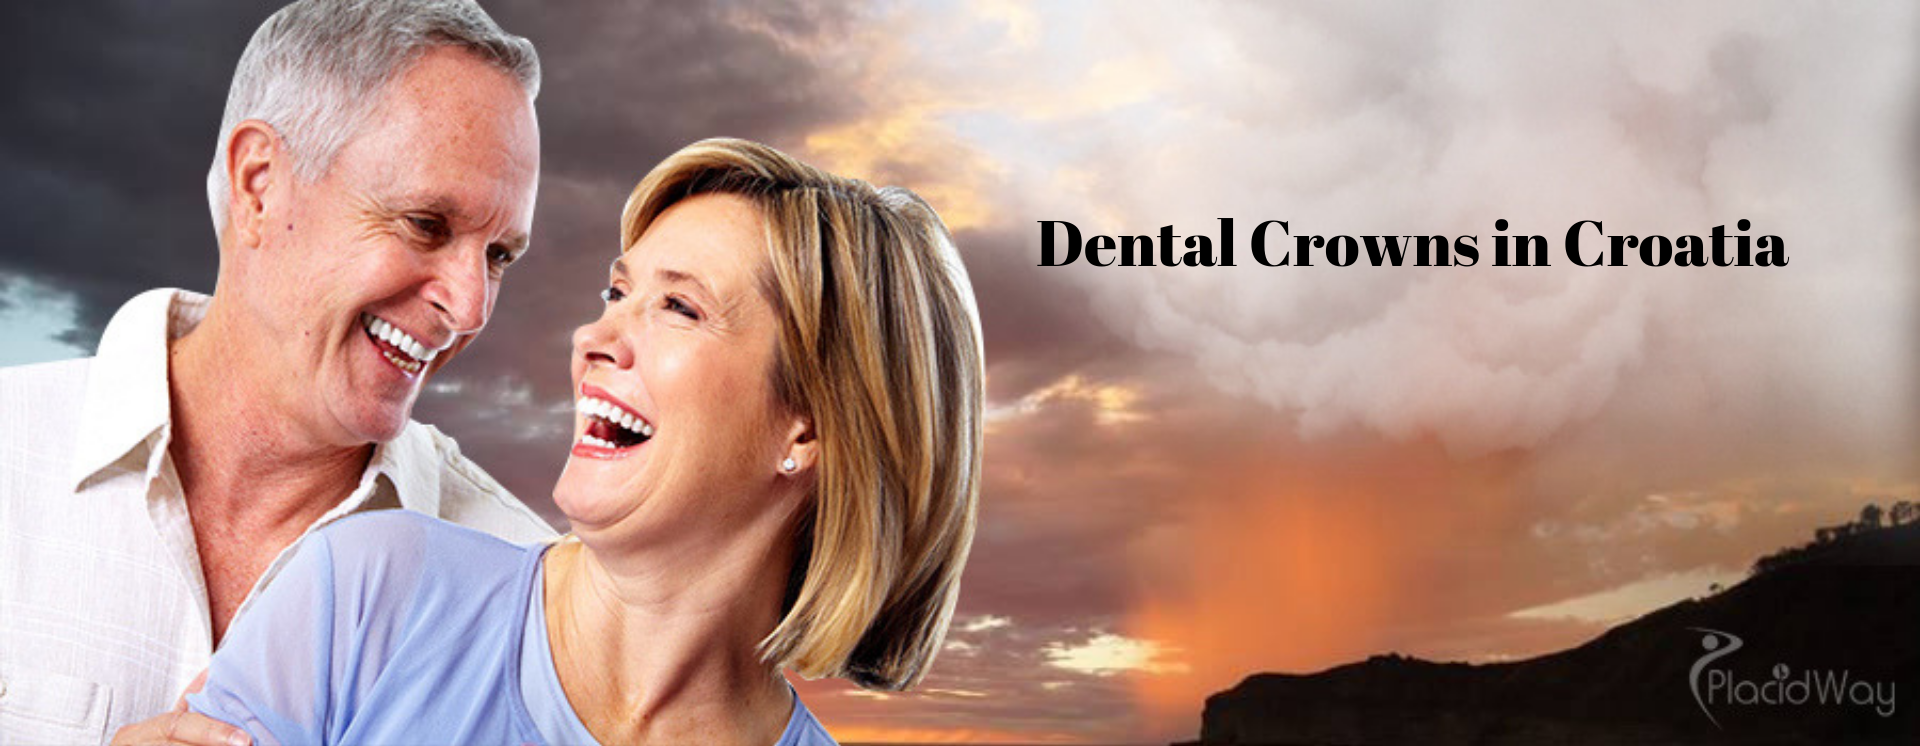 Dental Crown in Croatia